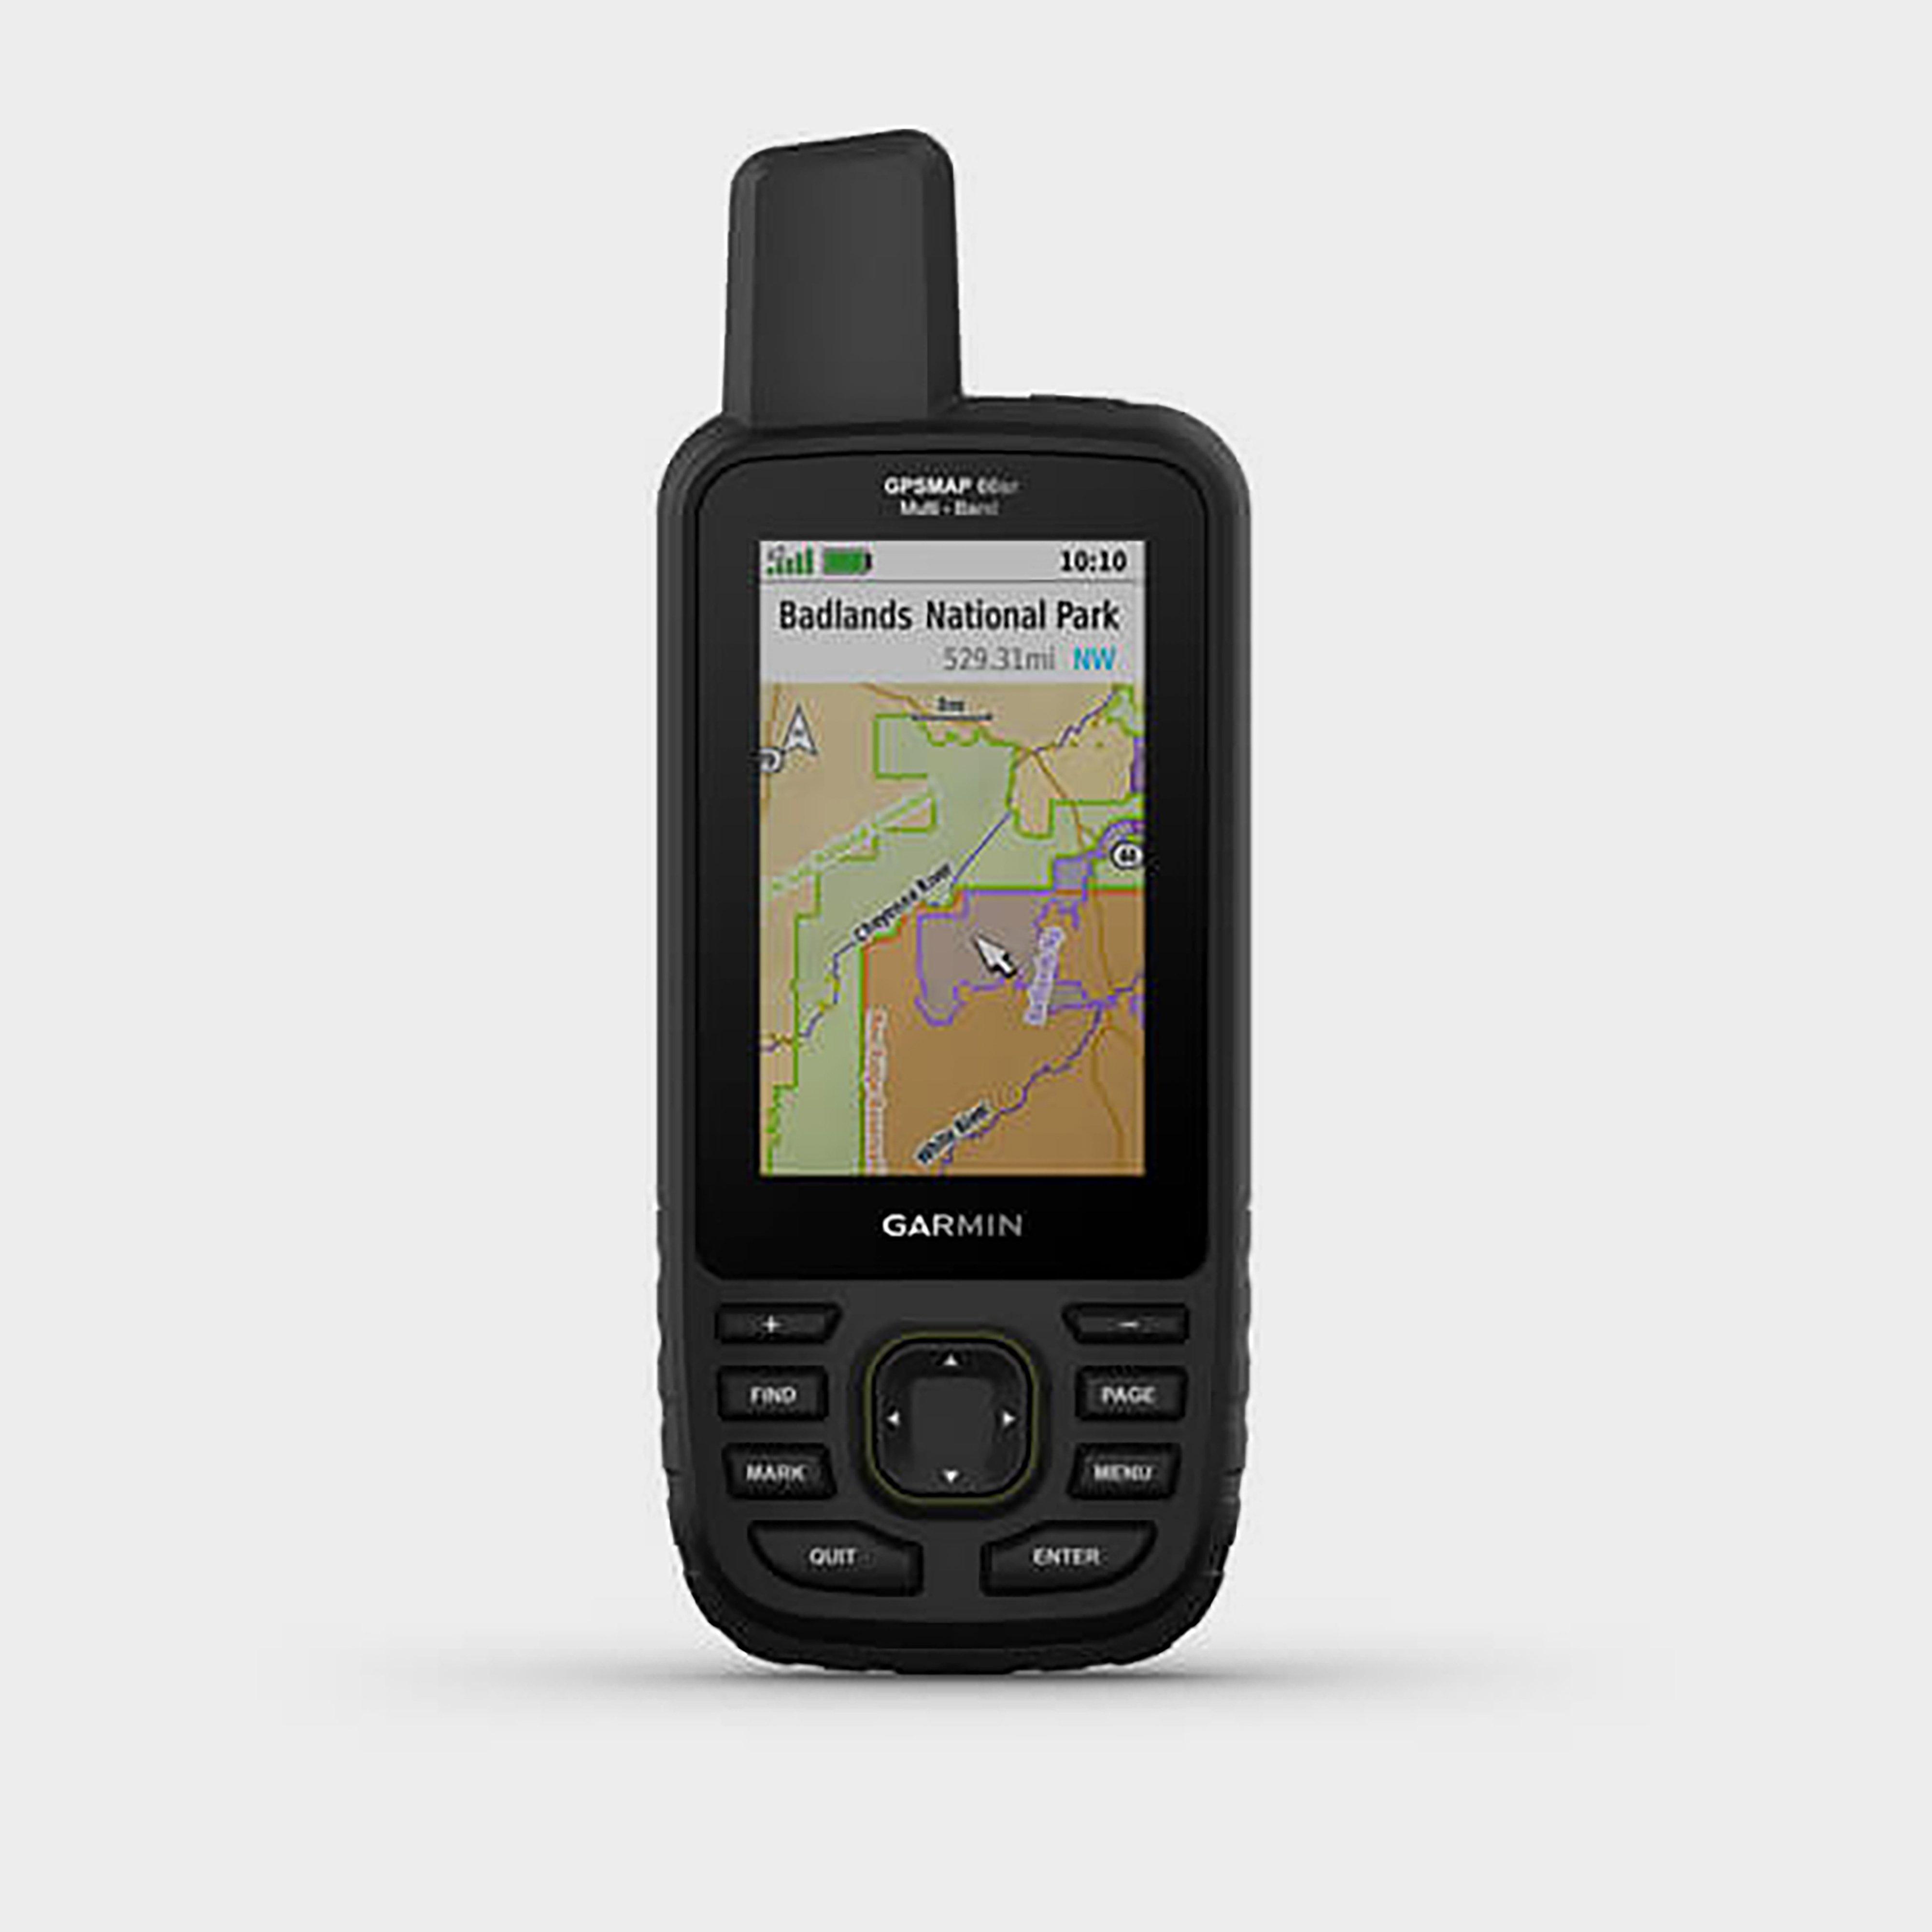 Image of Garmin Gpsmap 66Sr Topo 1:25 Handheld Device - Black/Black, BLACK/BLACK